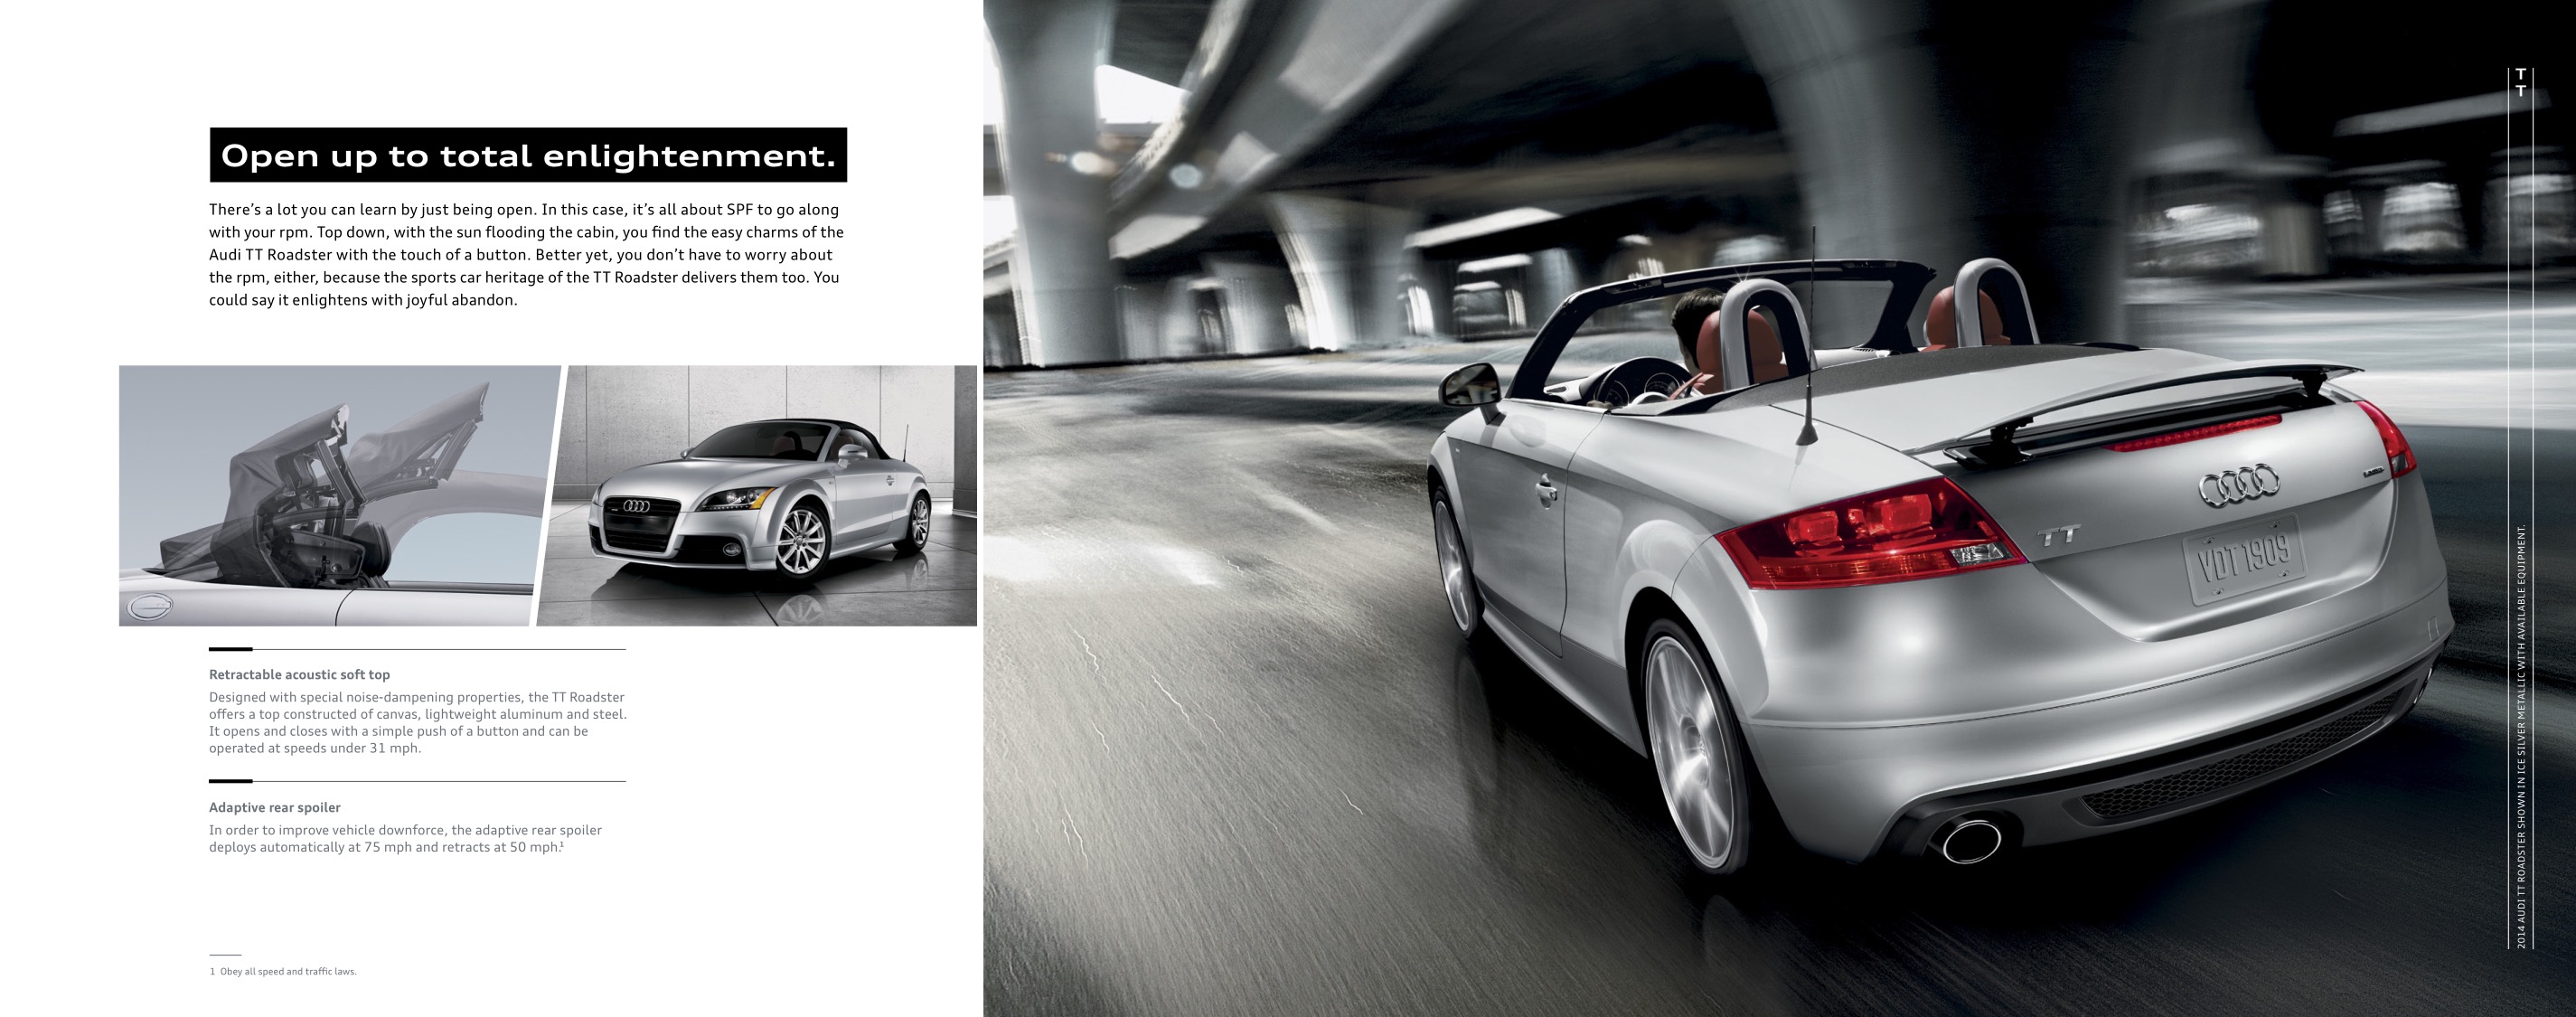 2014 Audi TT Brochure Page 2